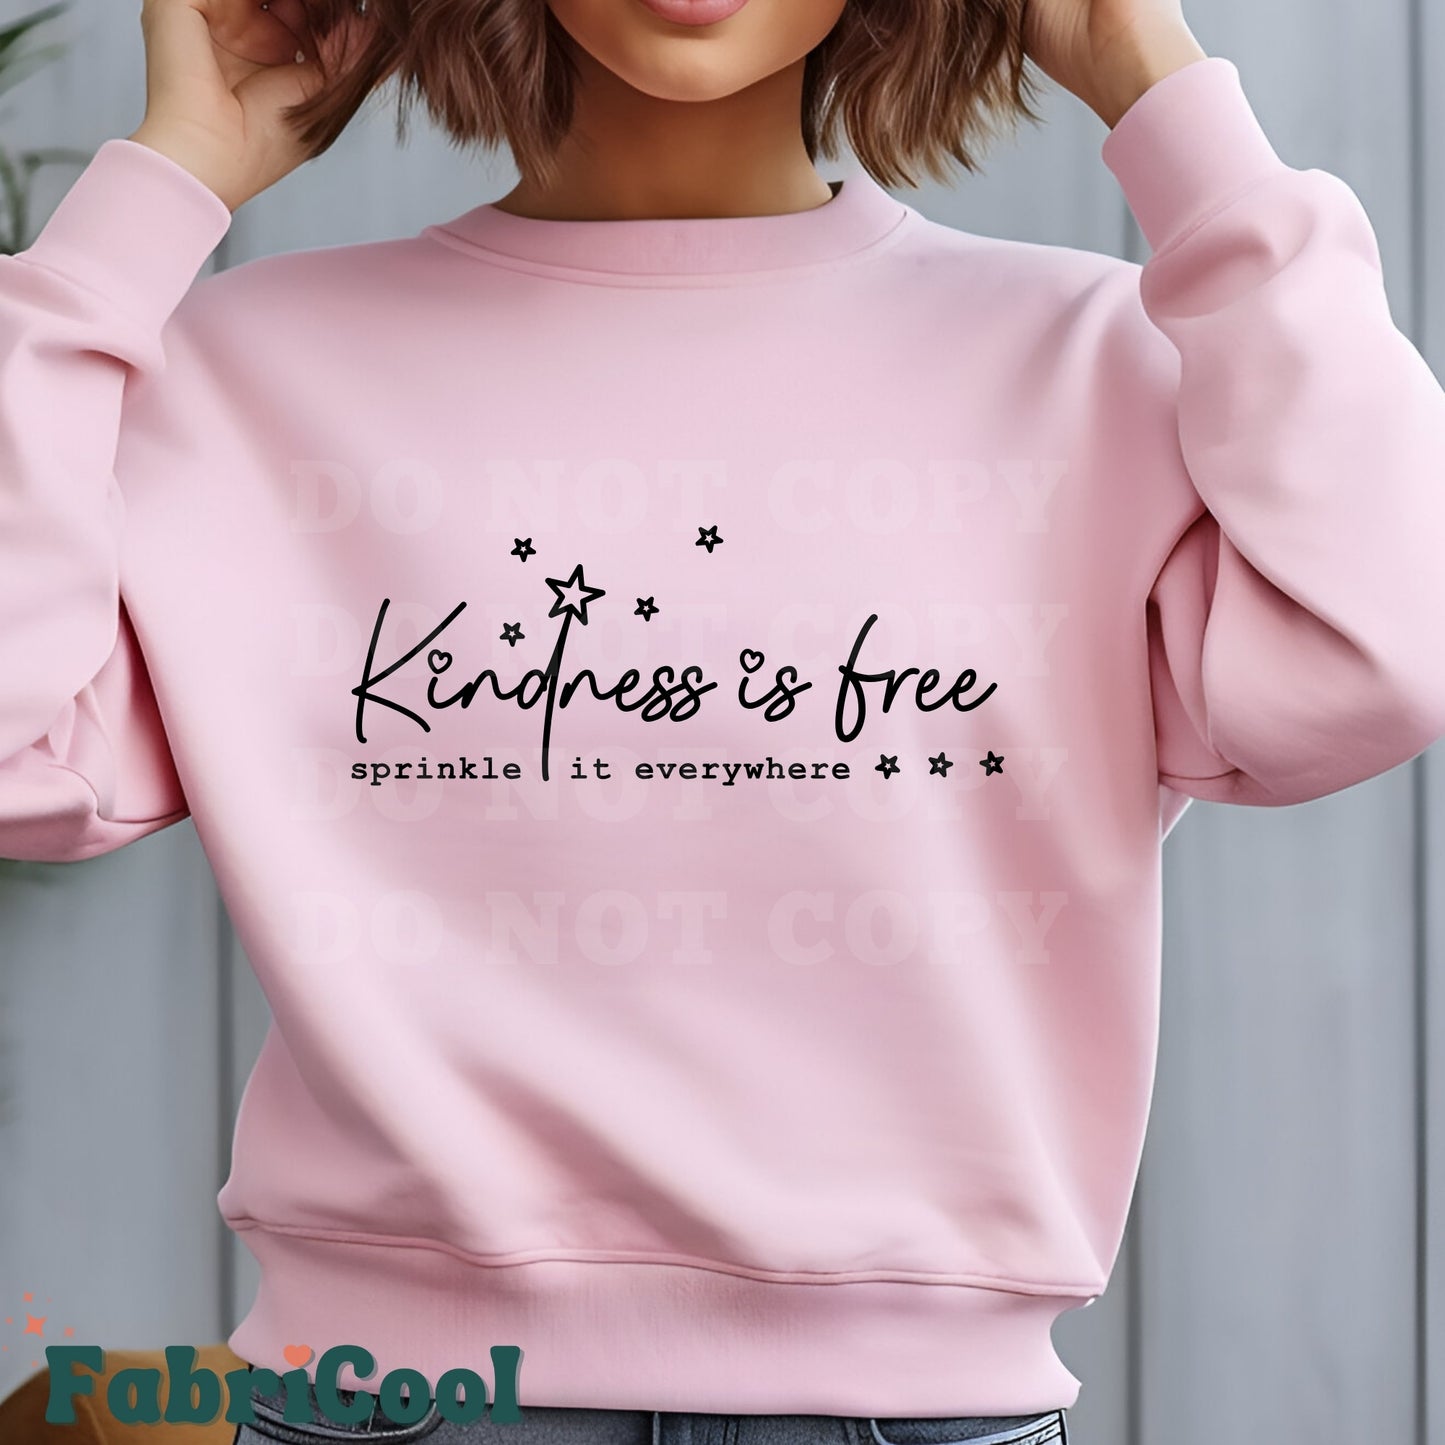 Kindness is free - Transfert sérigraphique Noir